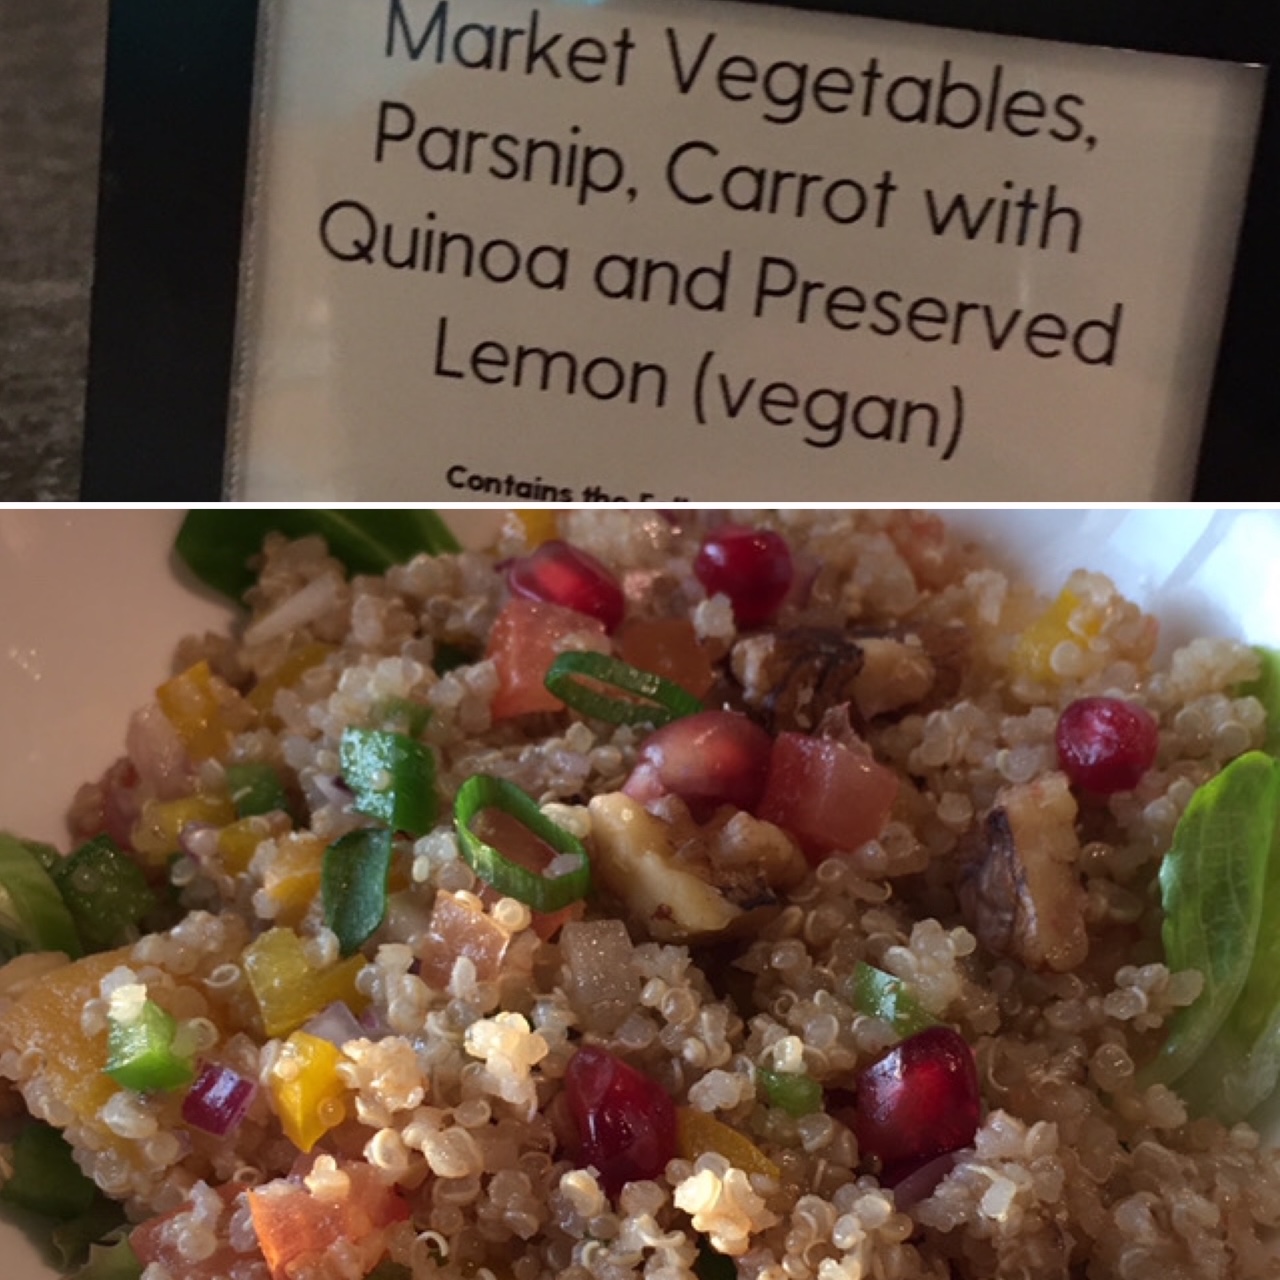 P&O vegan quinoa salad